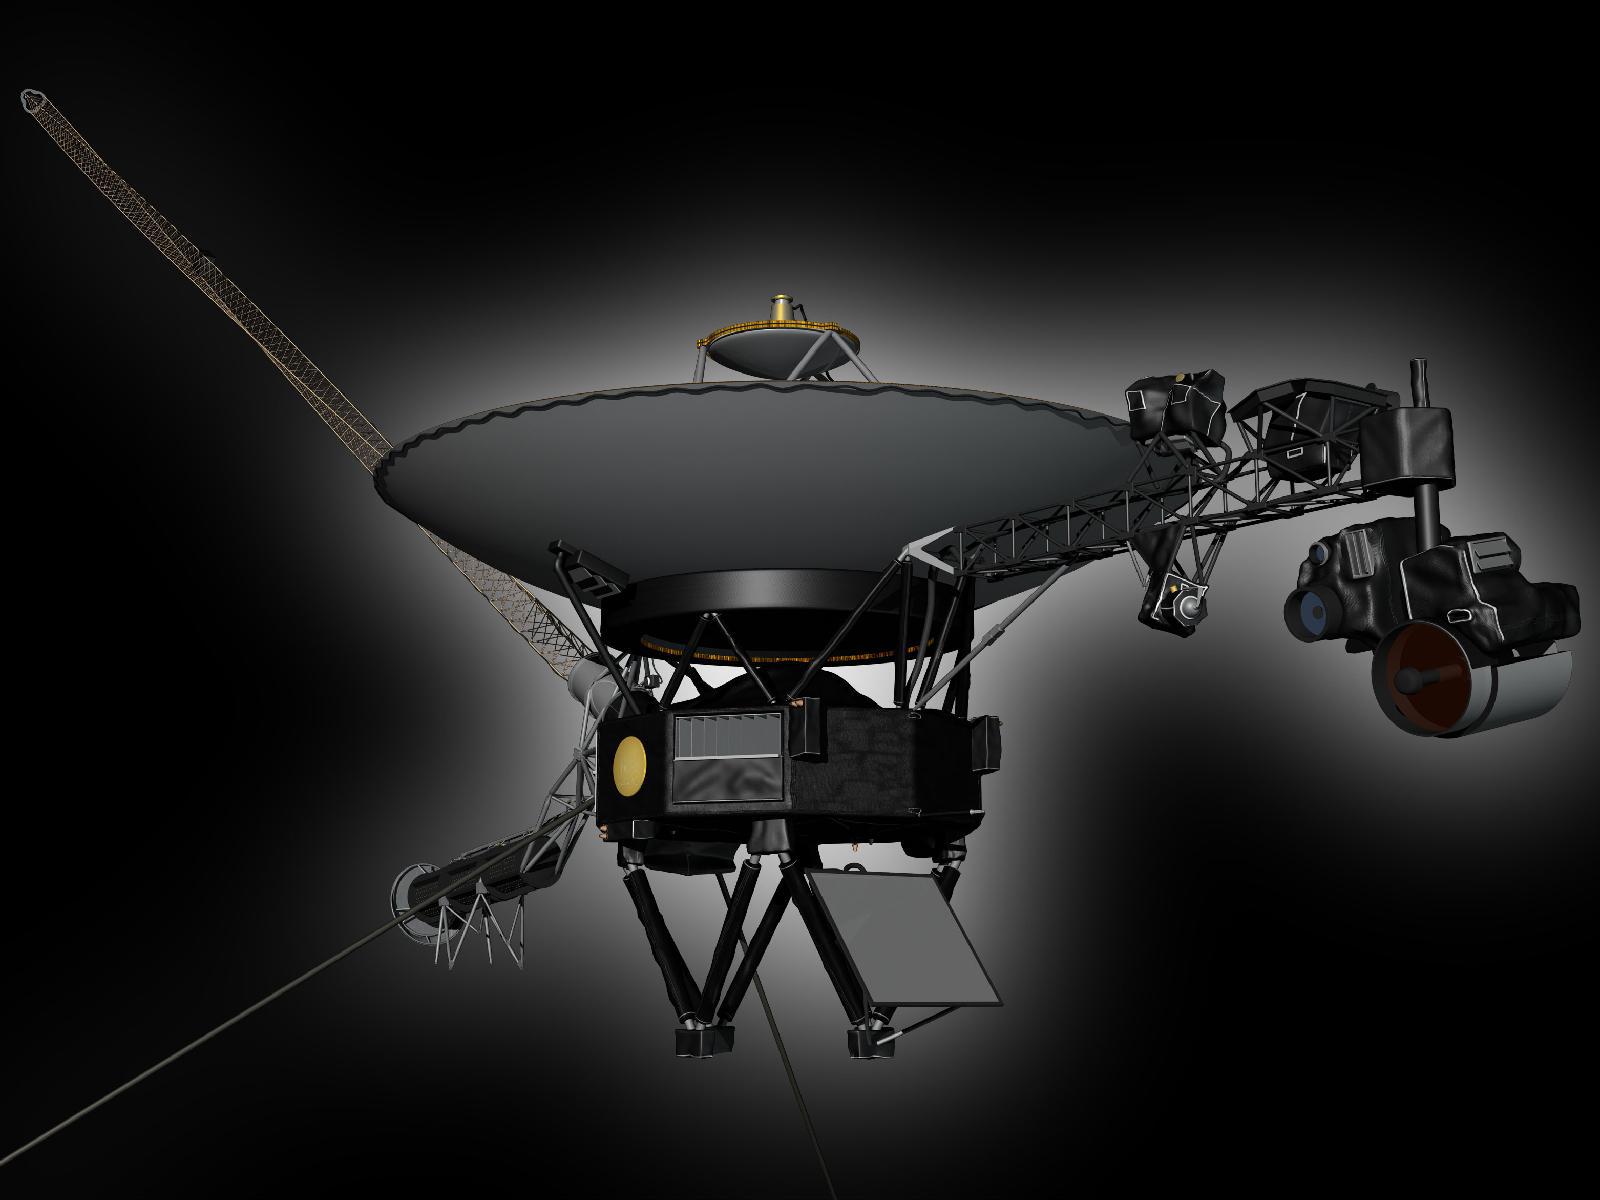 slide 5 - Voyager spacecraft